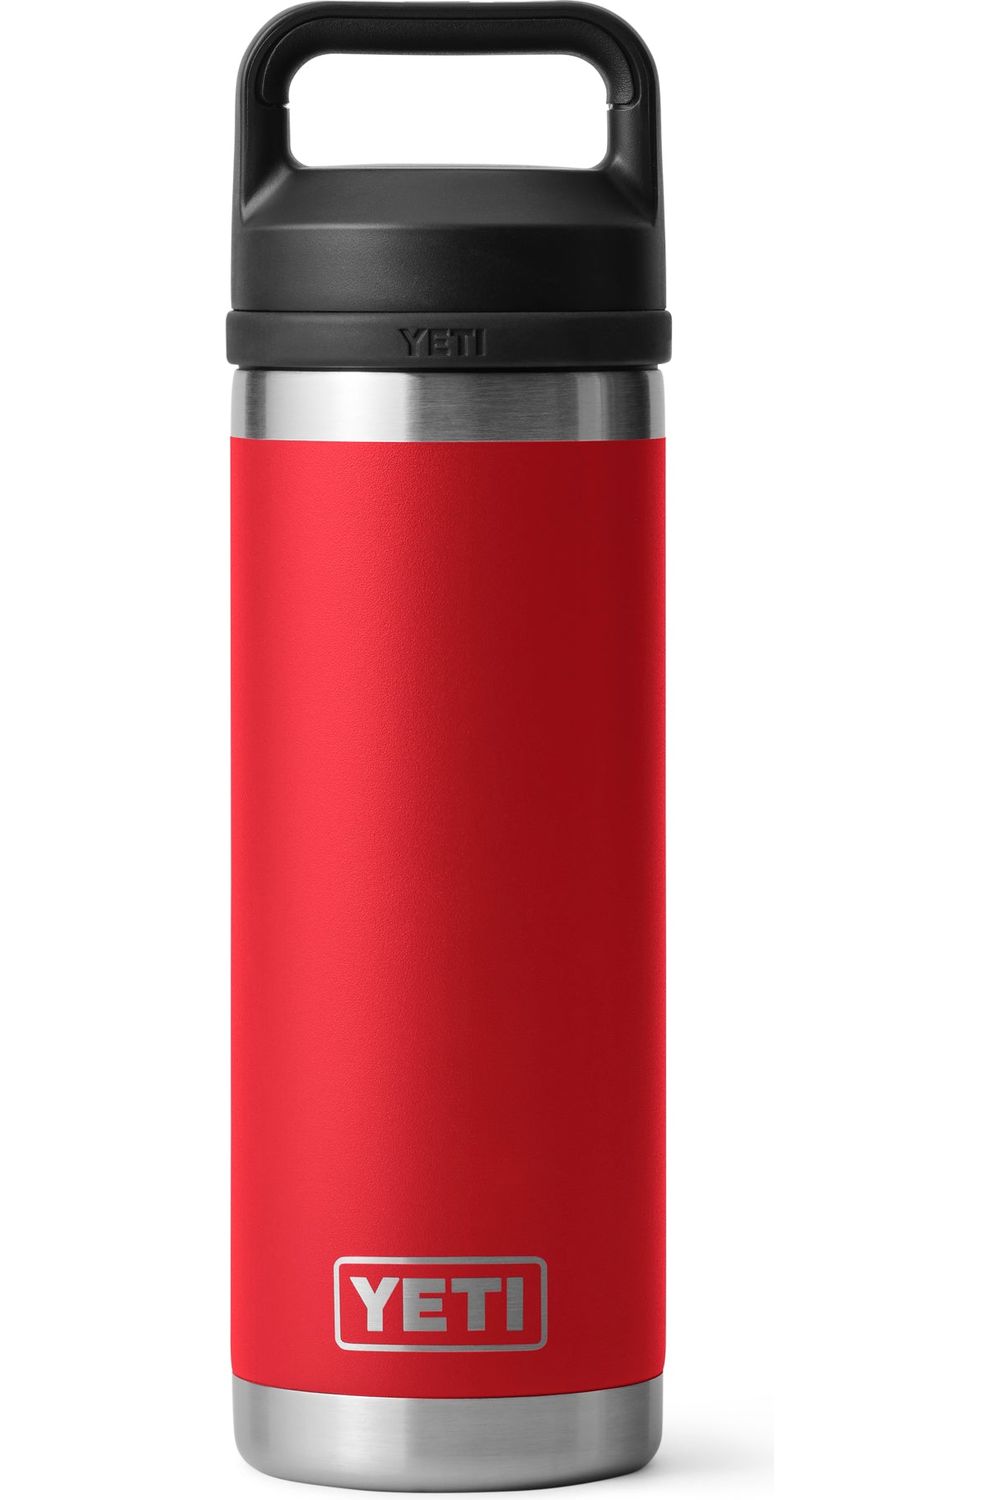 Yeti Rambler 18oz Water Bottle with Chug Cap - Power Pink